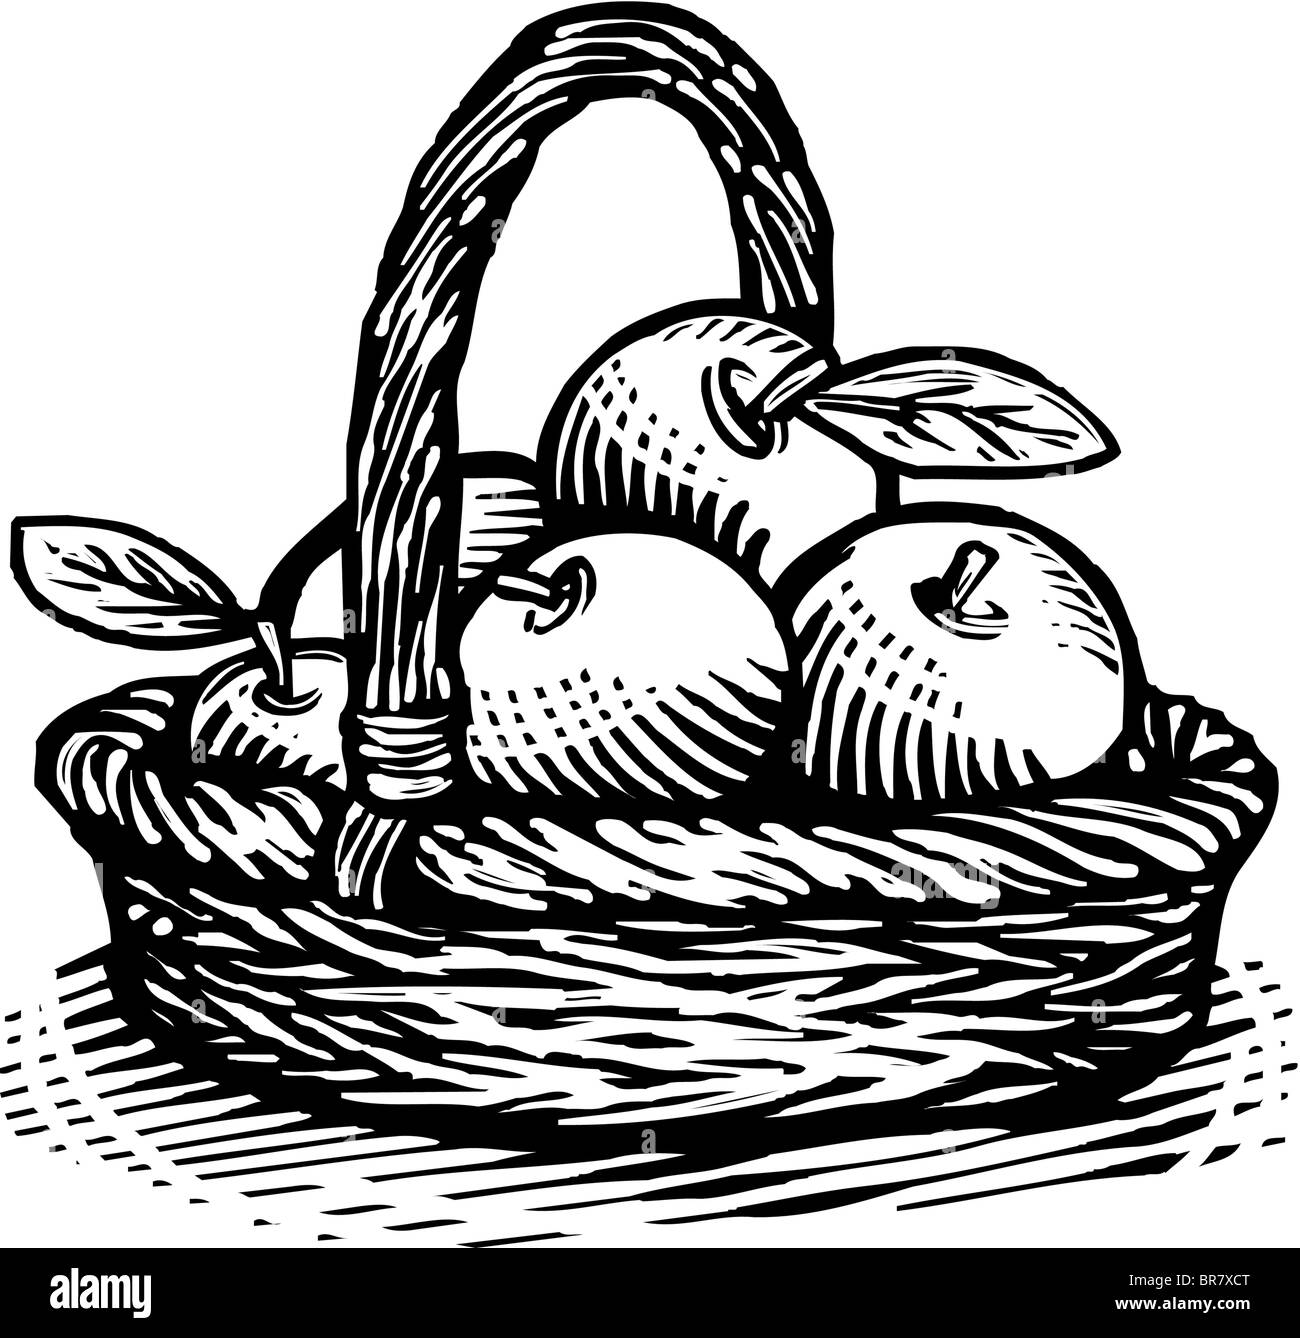 Disegno di un cesto di mele disegnato in bianco e nero Foto stock - Alamy